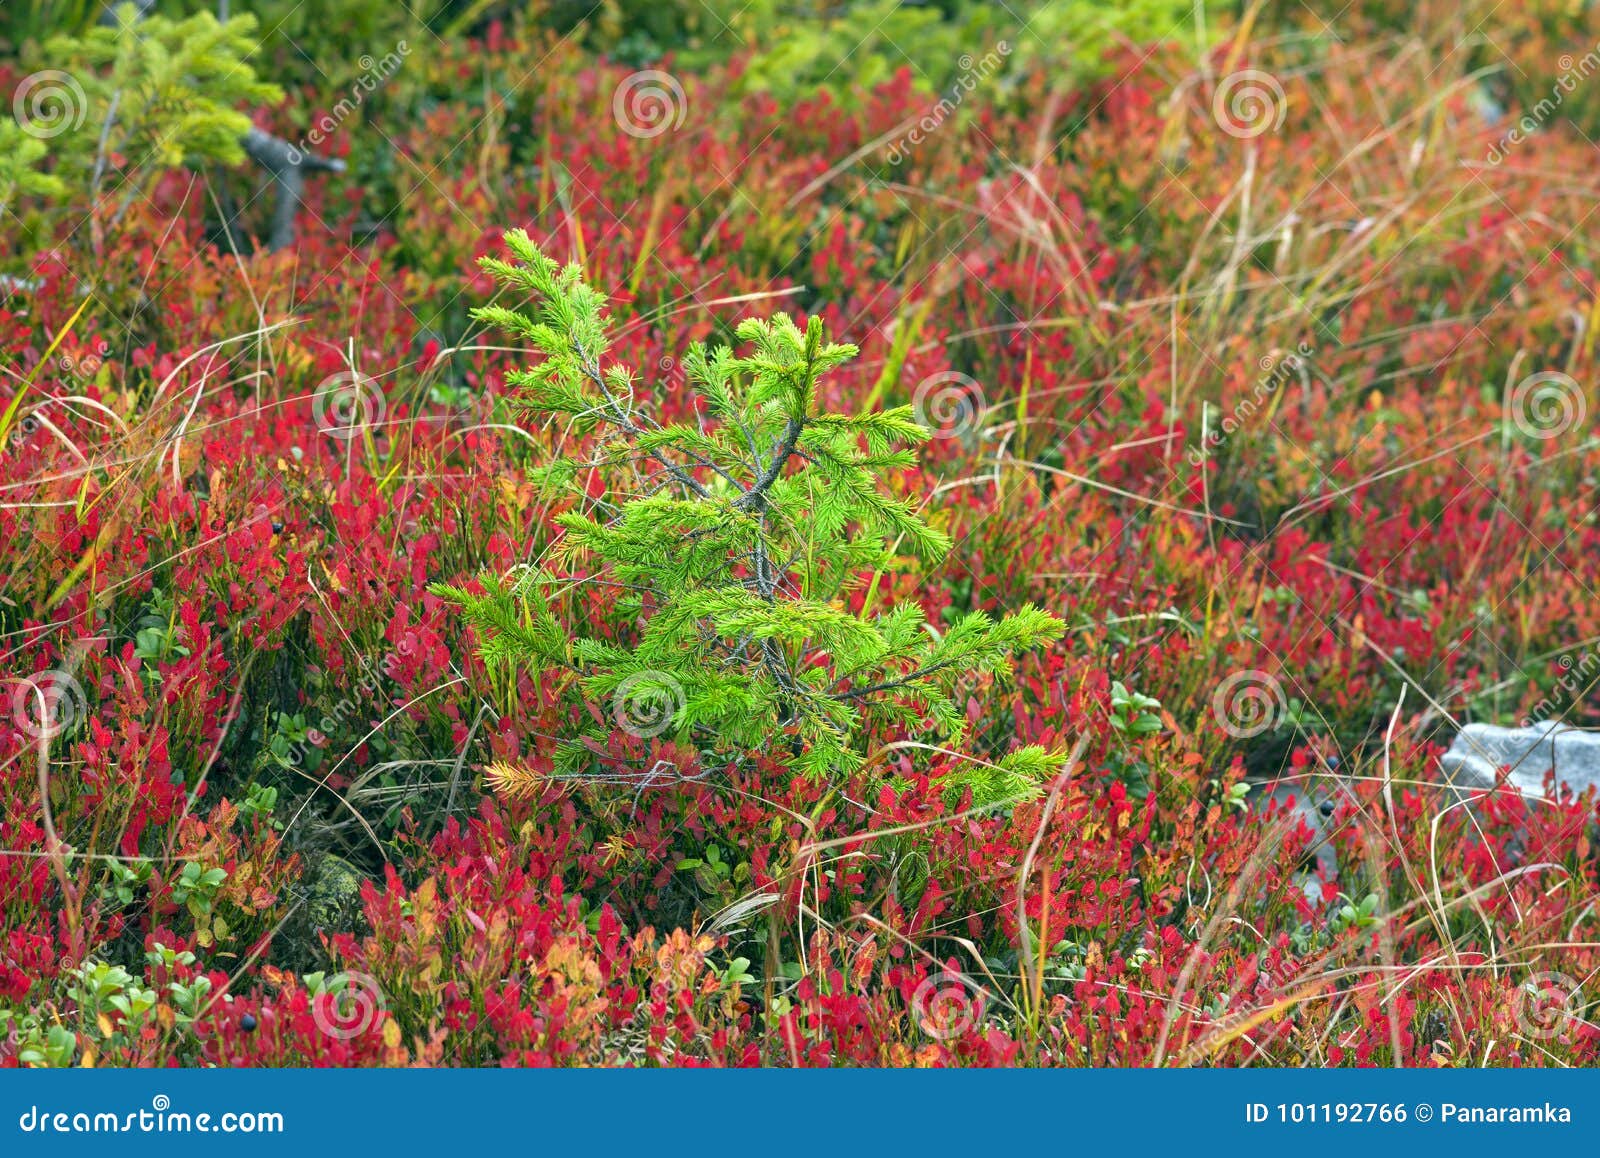 Gran i blåbär av hösten. Hösten i de ukrainska Carpathiansna täcker de alpina lutningarna av maxima med färgrika dekorativa mattor av växter och bär Ljusa färger och pittoresk modell av sidor och ris